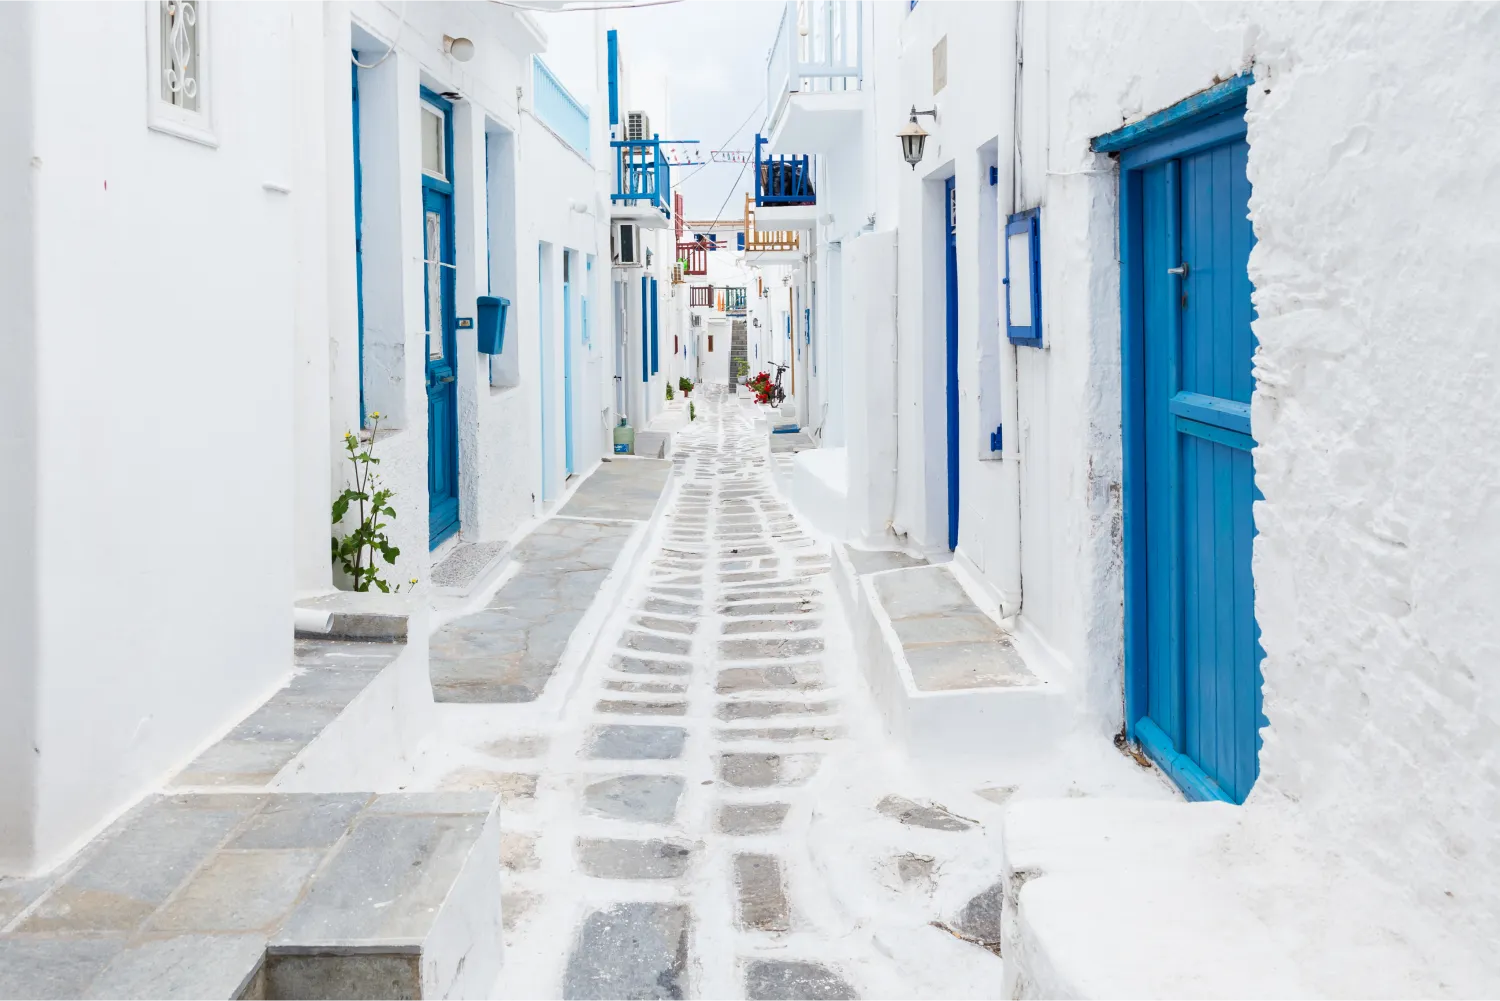 Les bâtiments blanchis à la chaux et les rues étroites de la ville de Mykonos